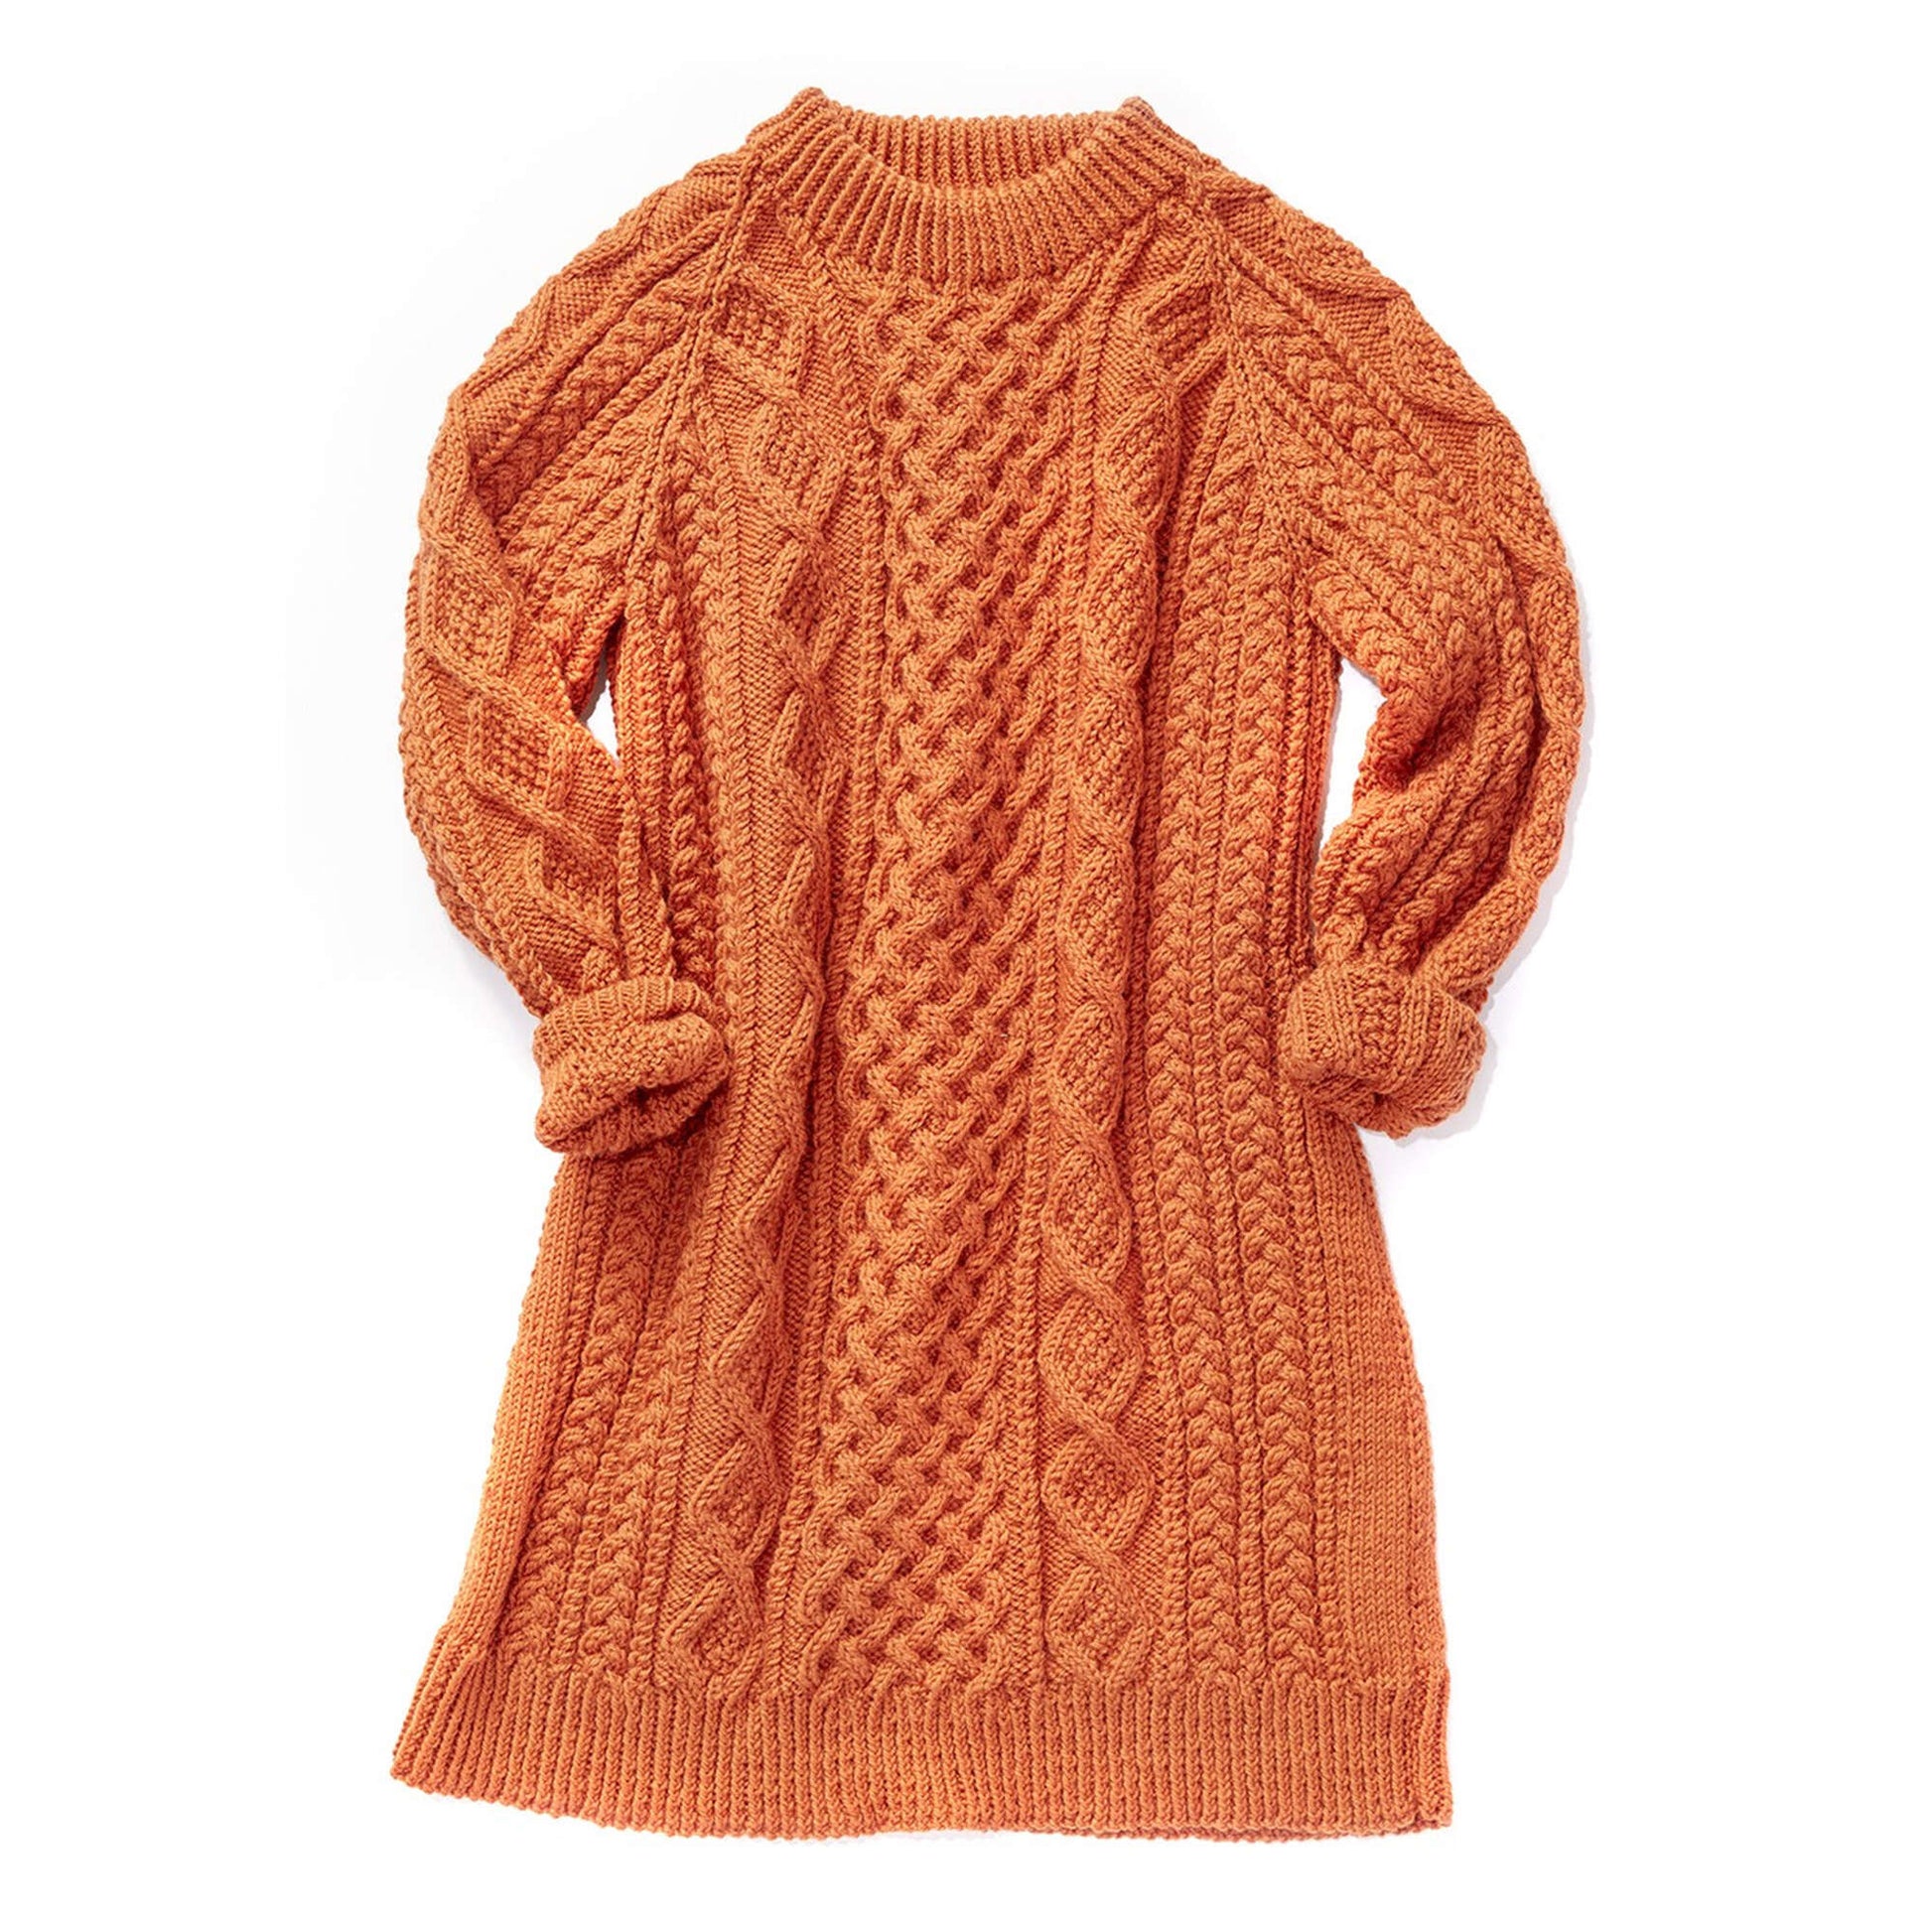 Patons Honeycomb Aran Sweater Pattern